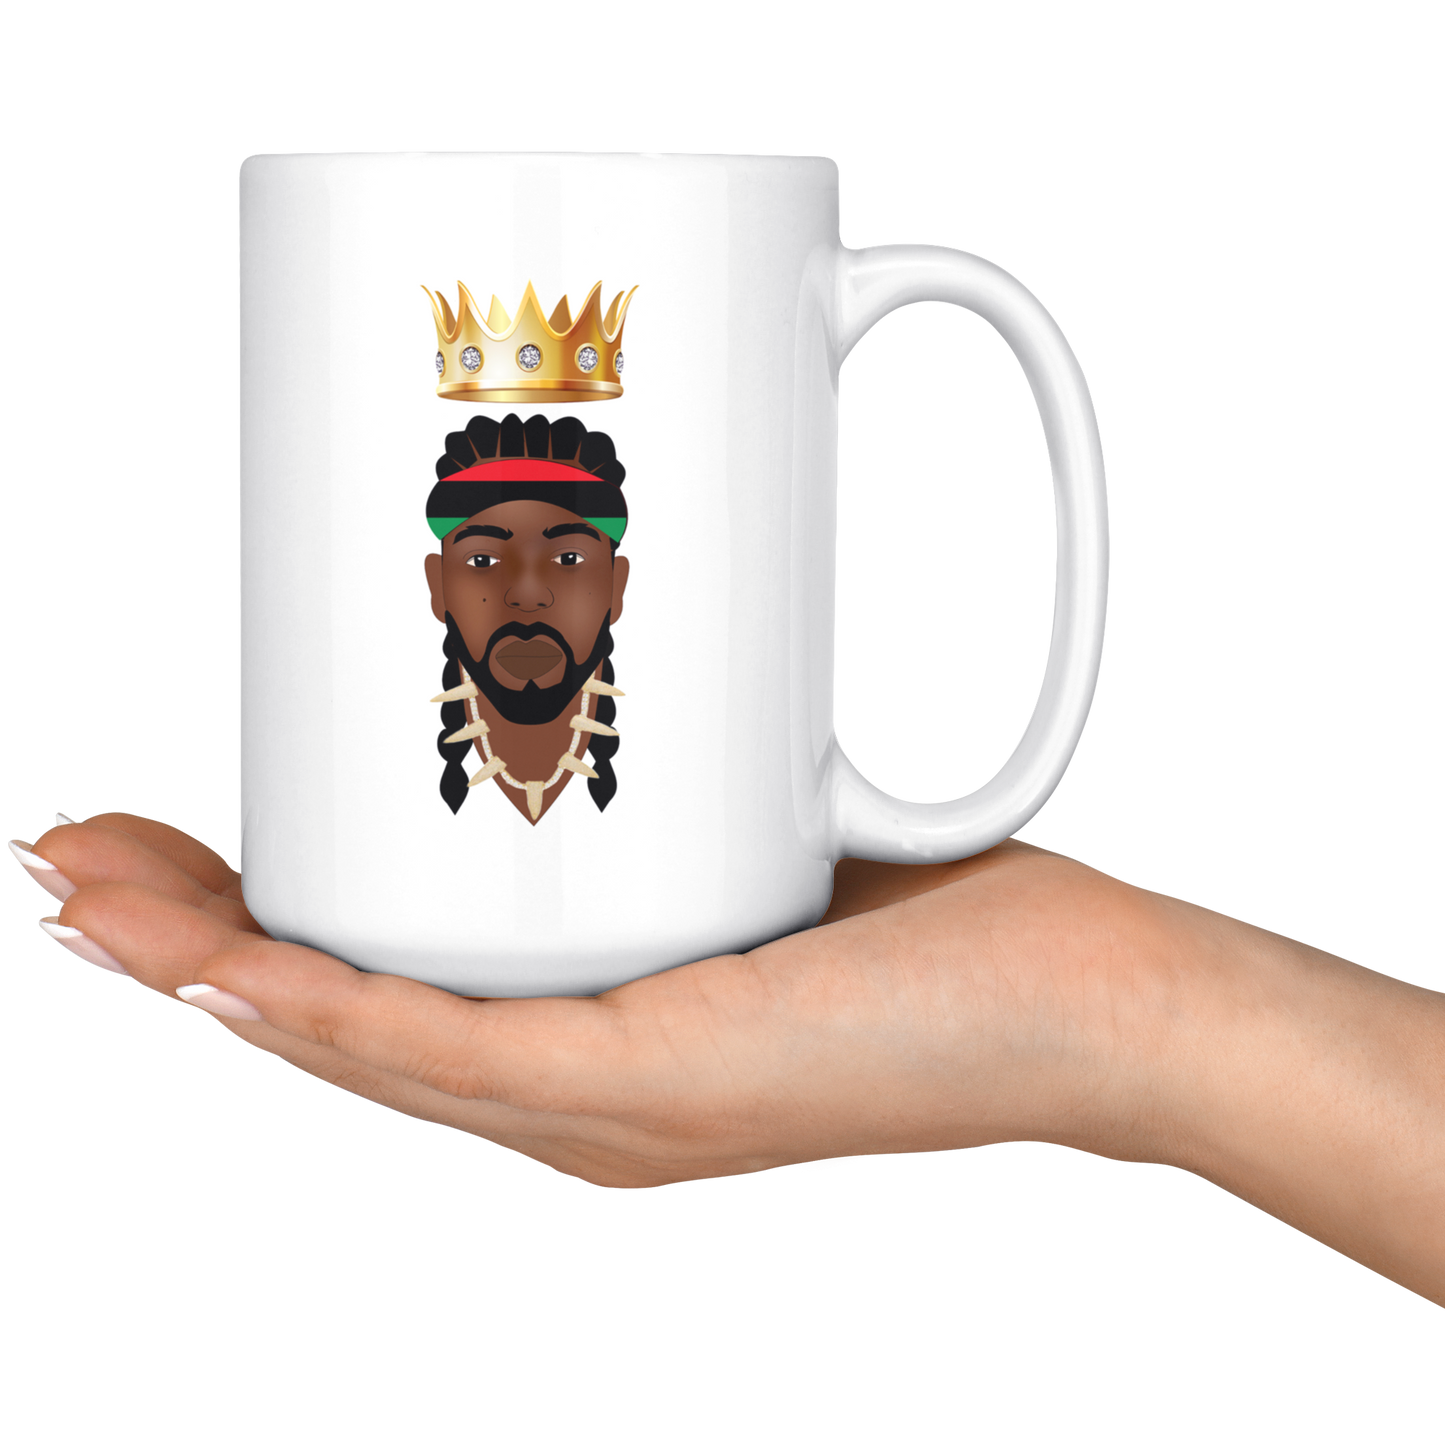 Crowned King’s Mugs